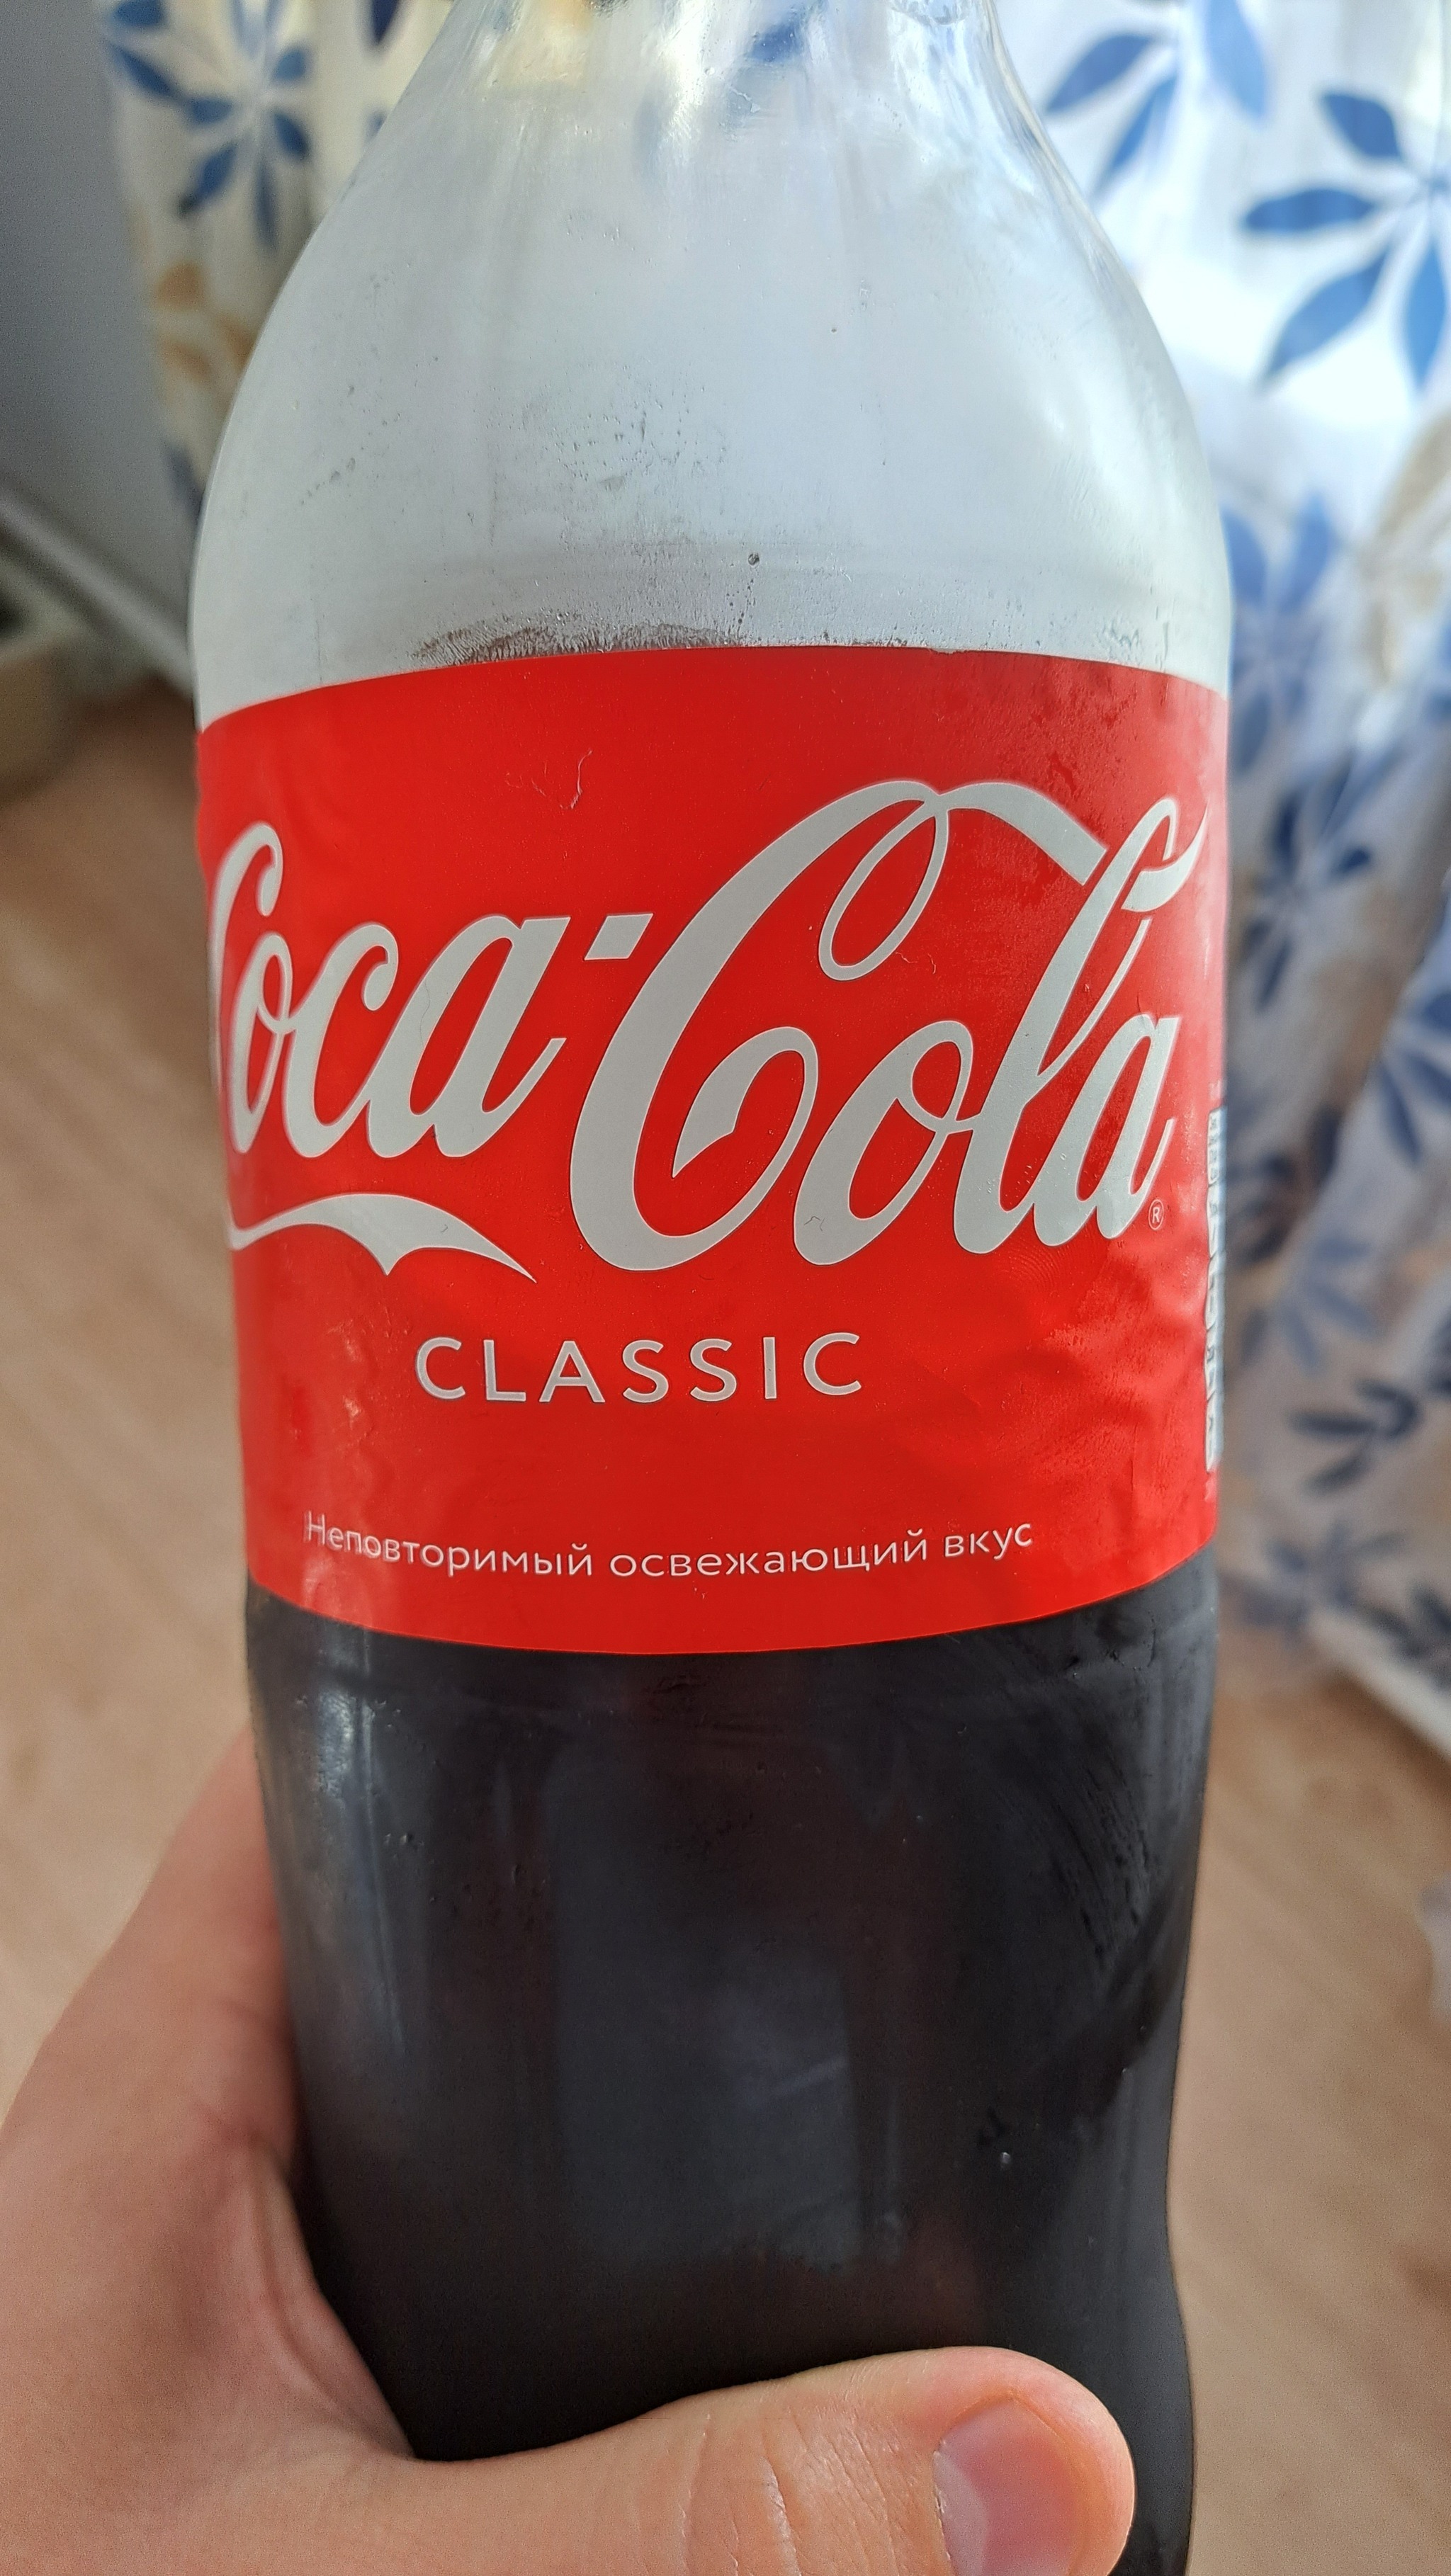 Подделка Кока колы